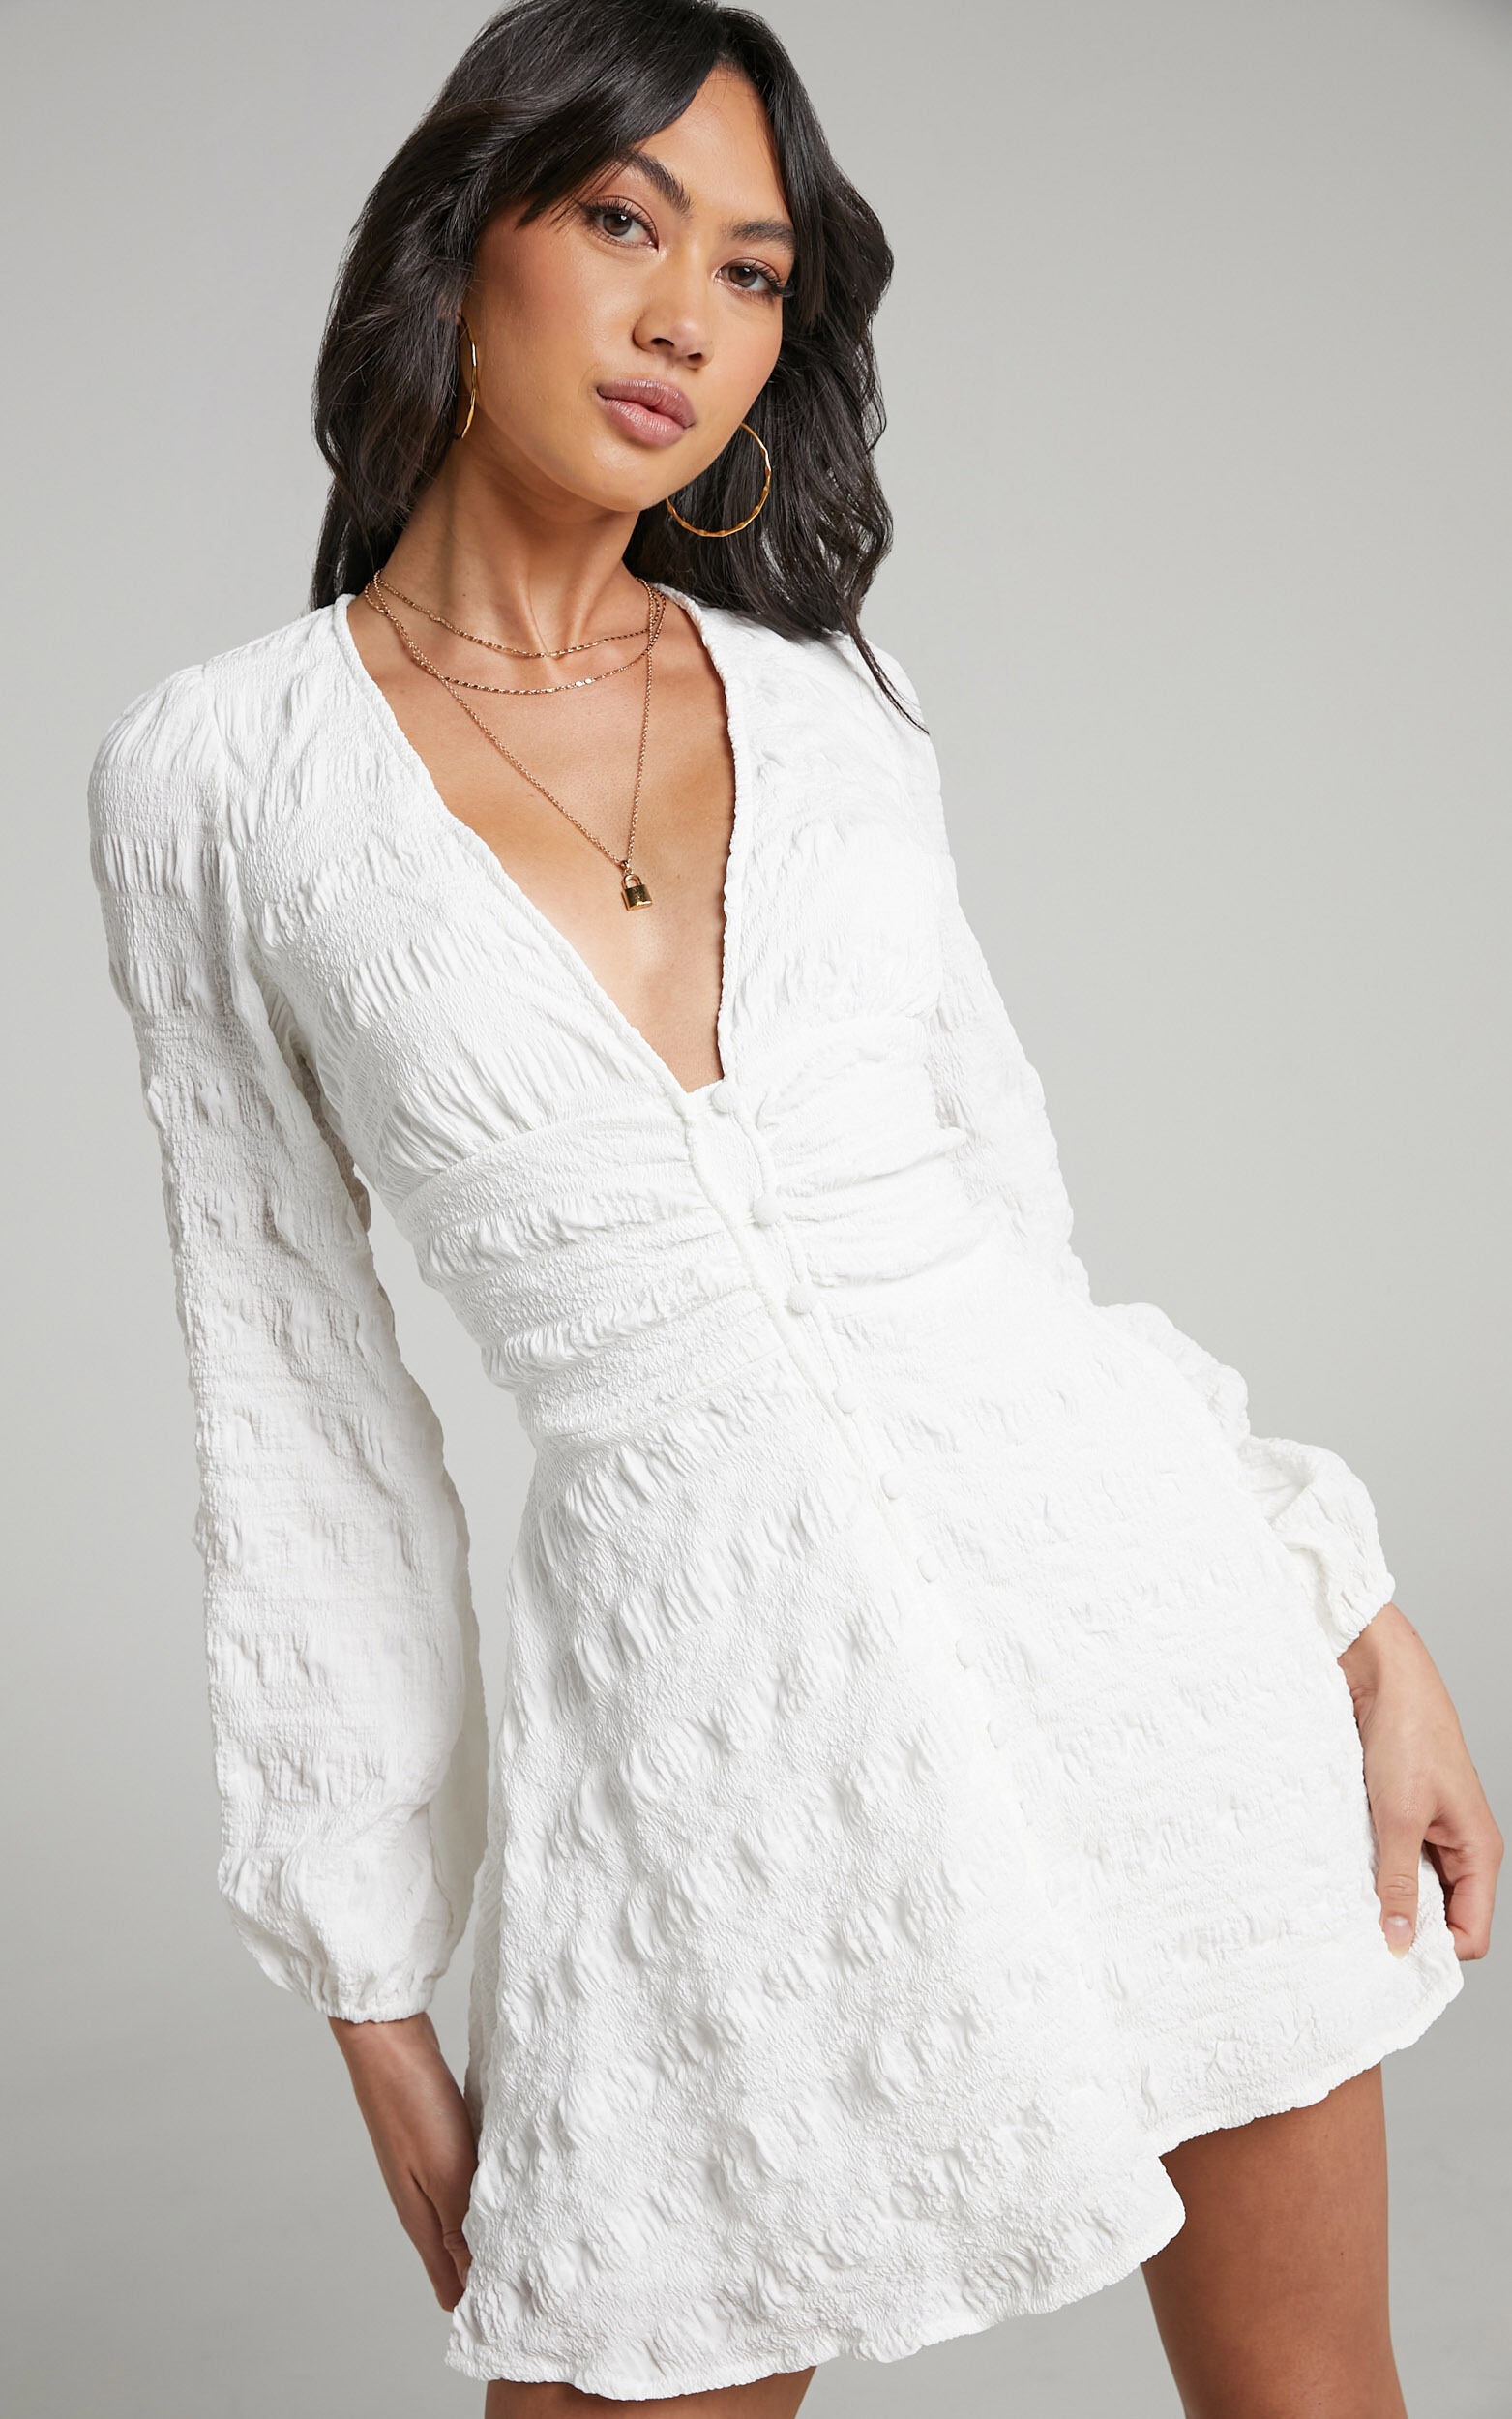 Sanaa Mini Dress - Long Sleeve Open Back Dress in White - 04, WHT1